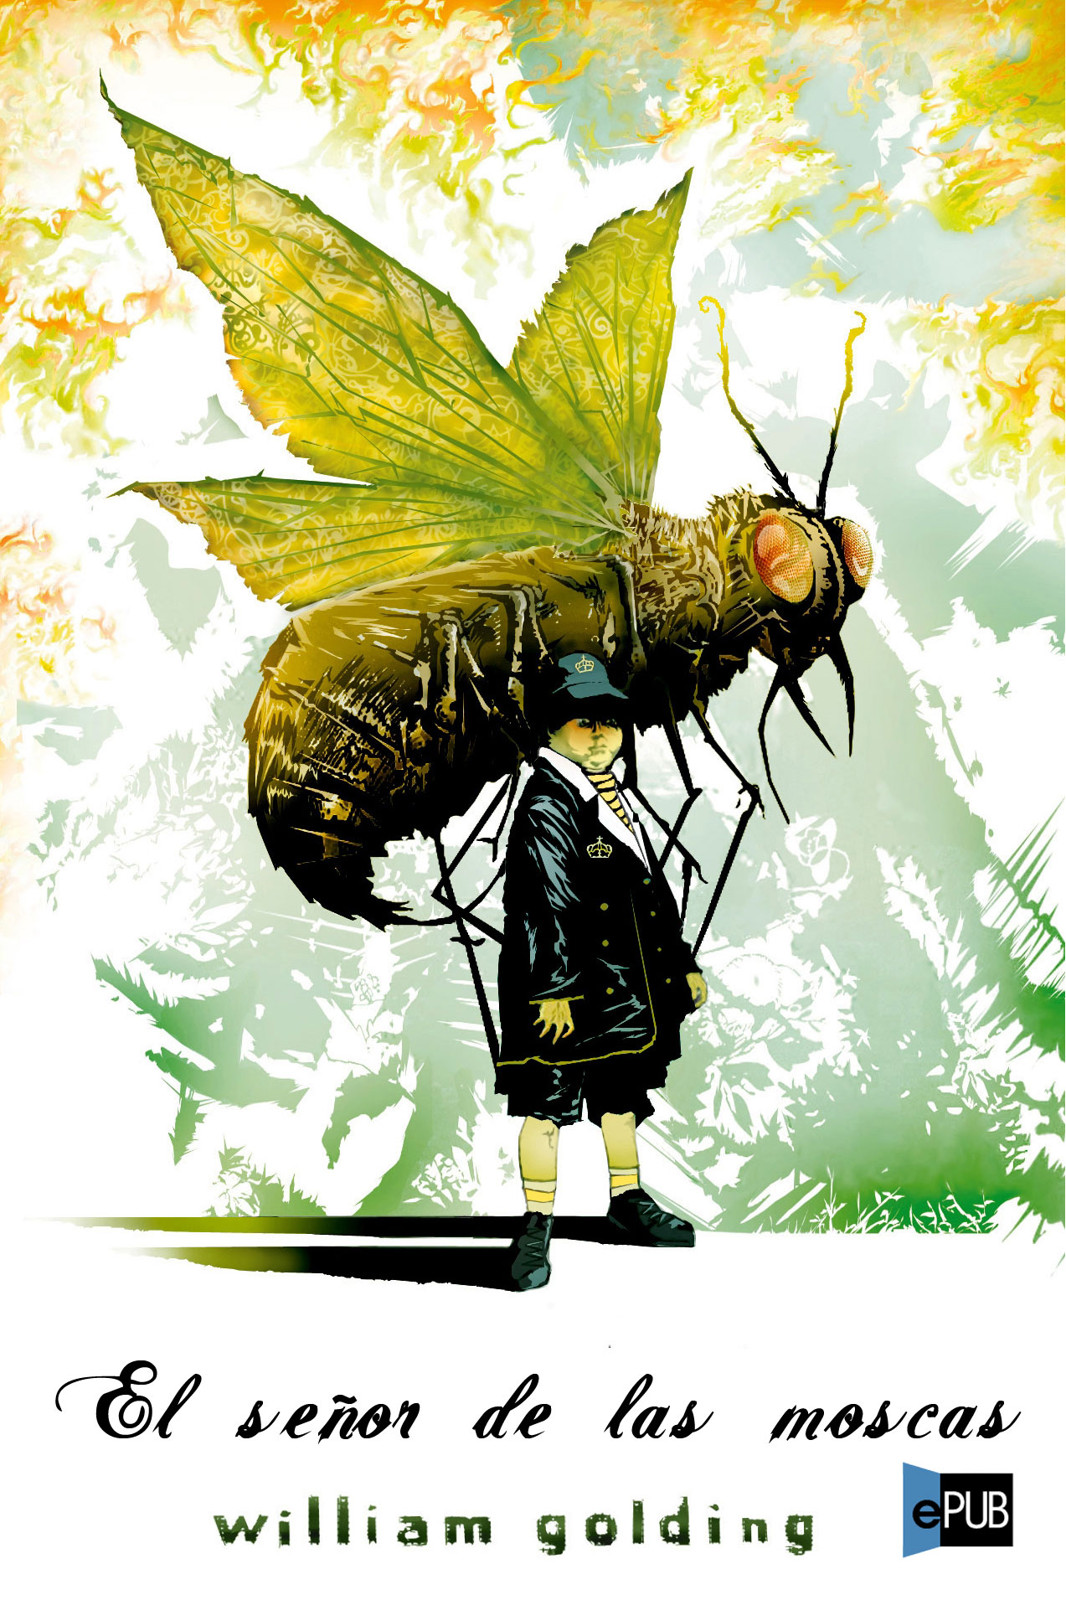 El señor de las moscas, creando una sociedad - La Mente es Maravillosa